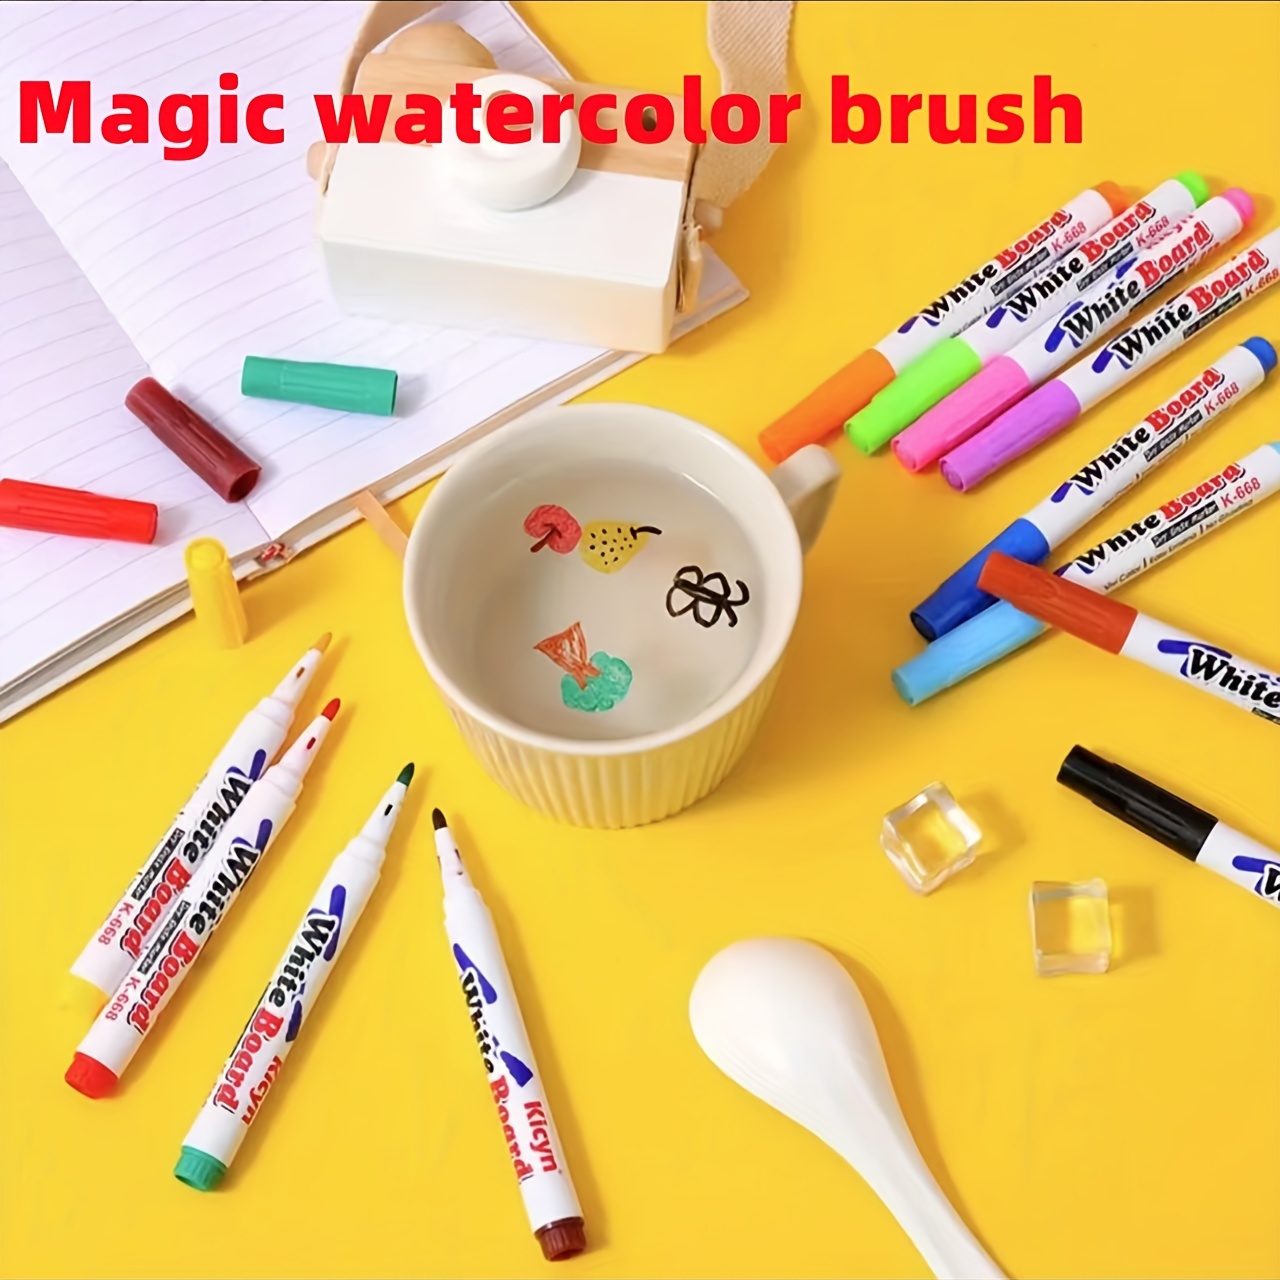 Crayola® Jumbo Paint Brushes, Set of 12